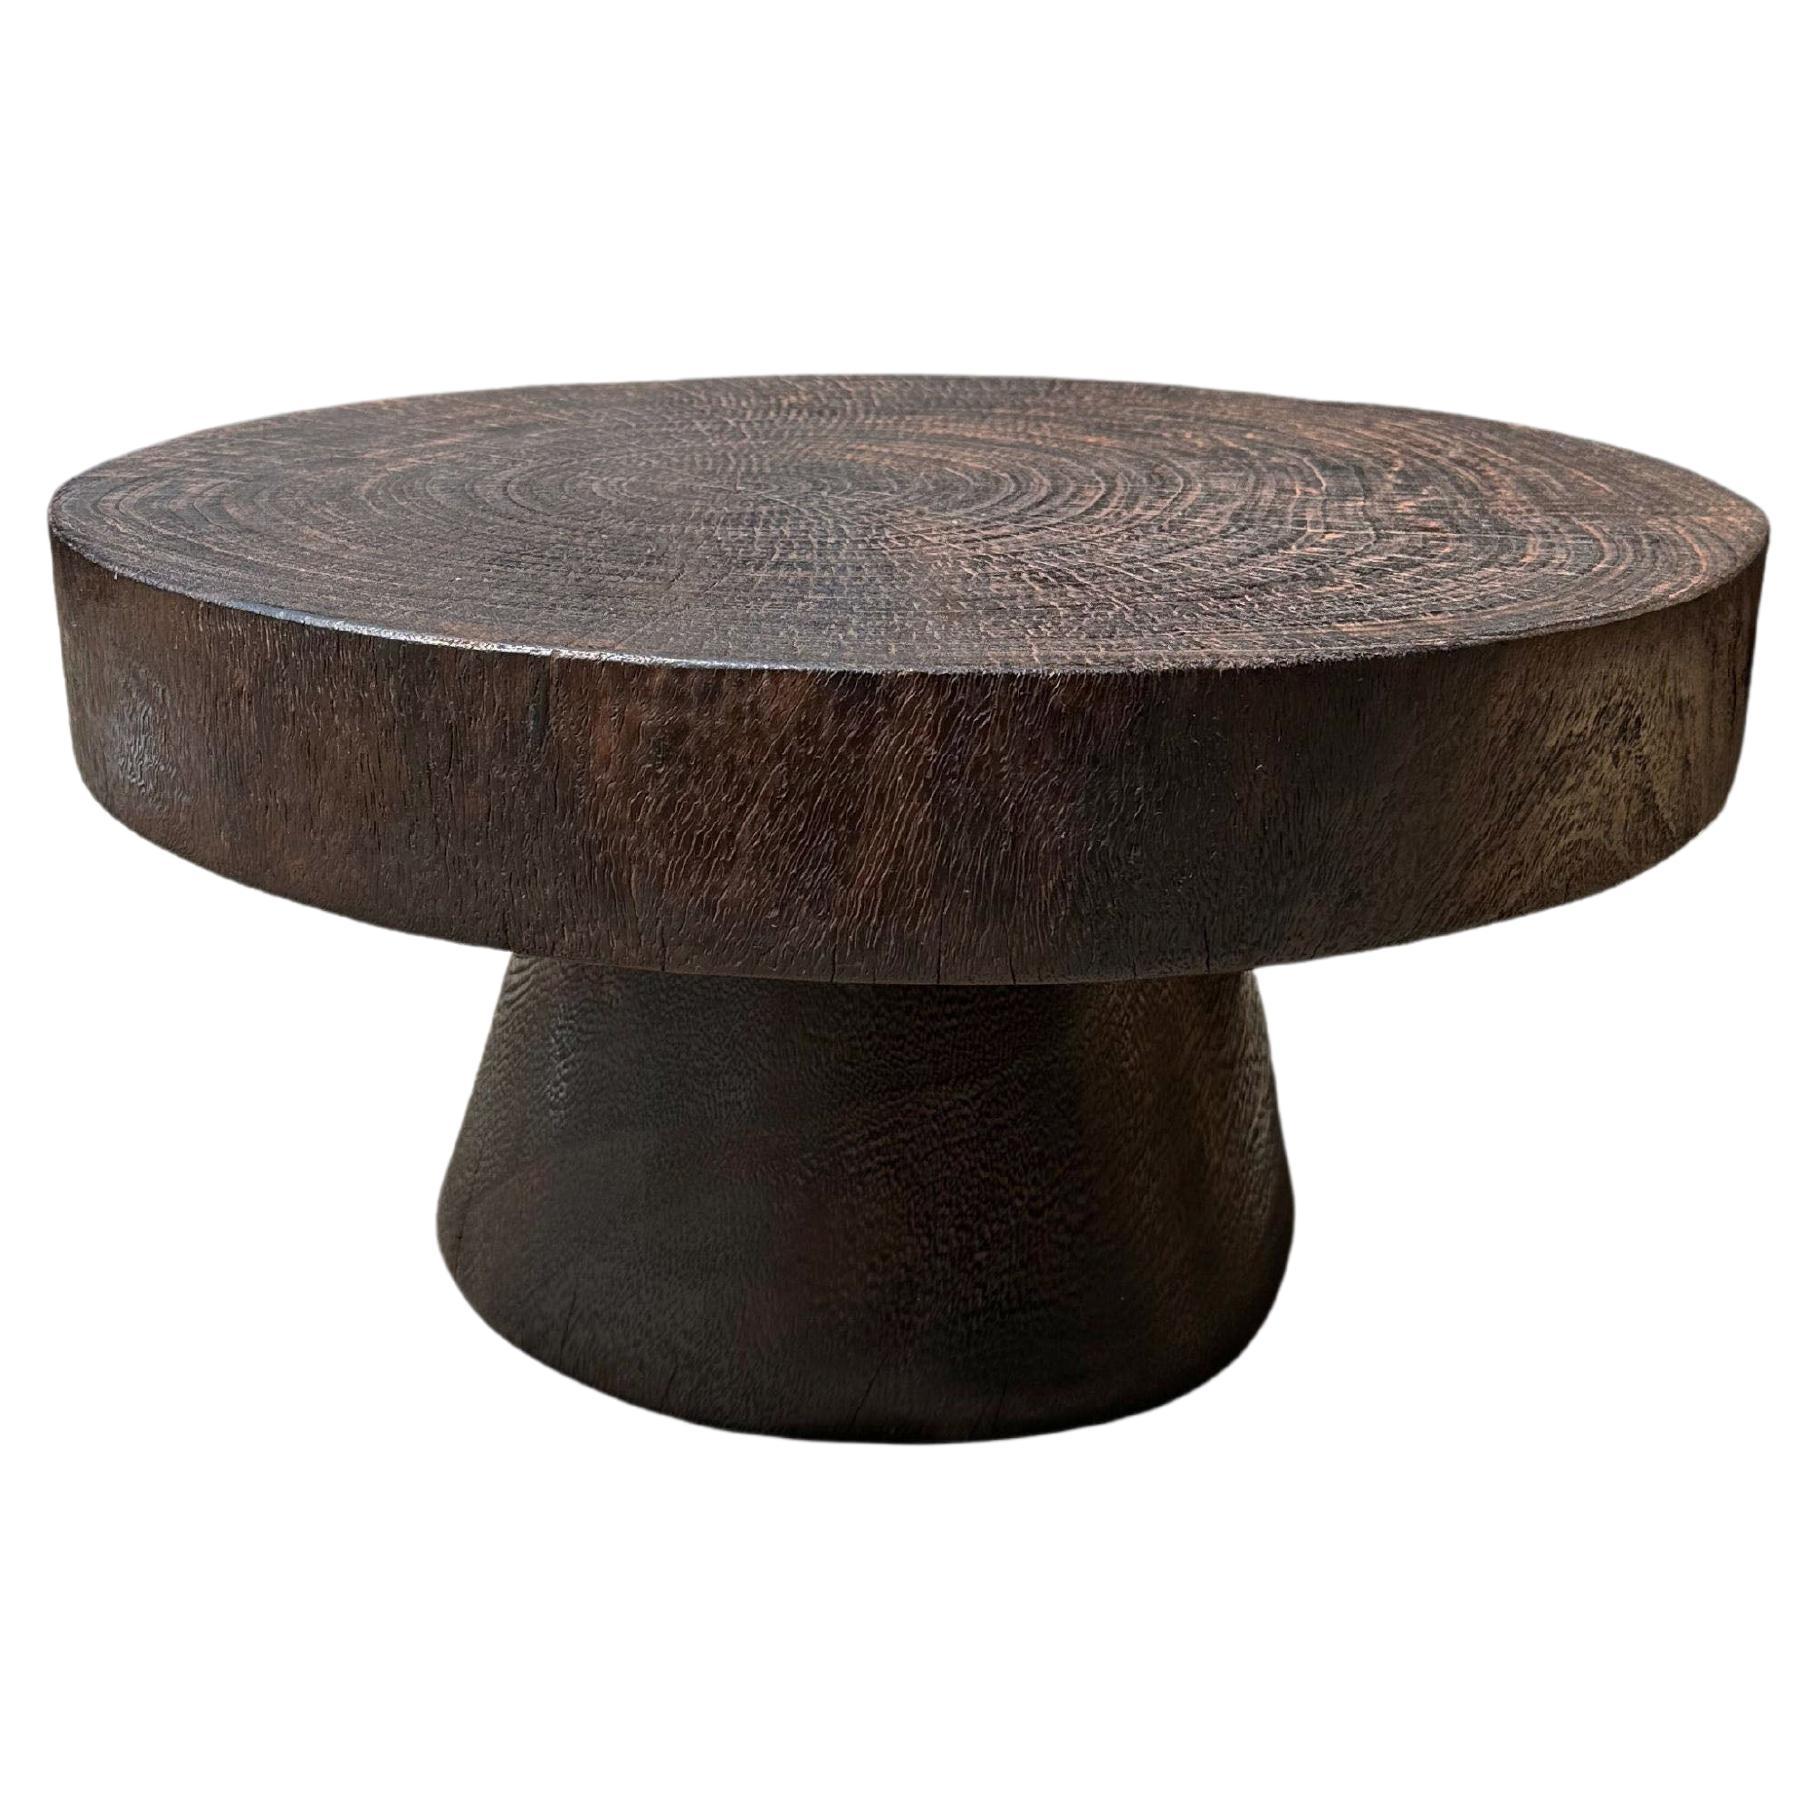 Skulpturaler runder Tisch aus massivem Suarholz, natürlich lackiert